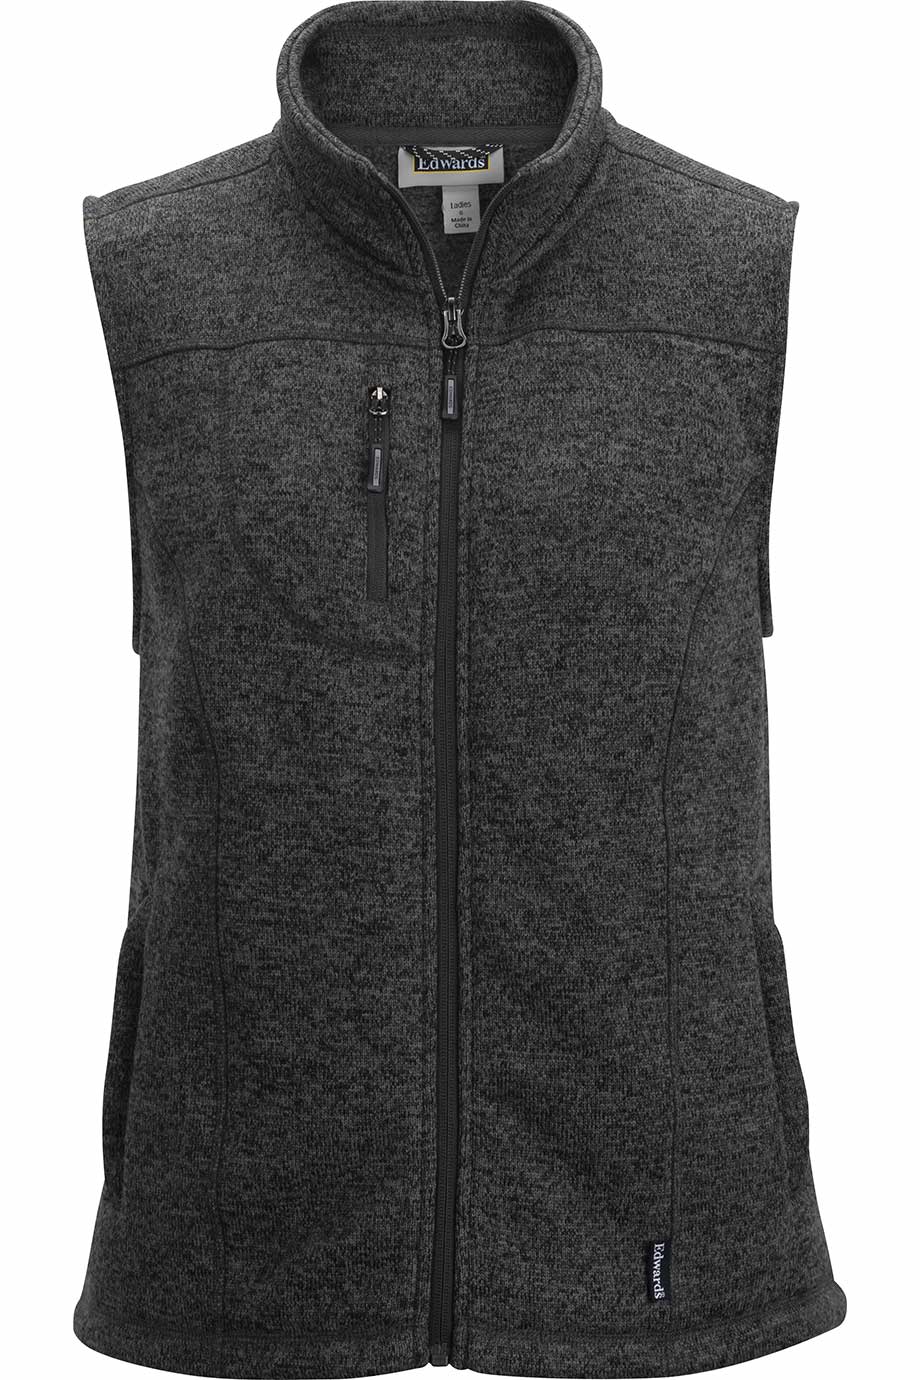 Edwards 6463 Women's Sweater Knit Fleece Vest Black